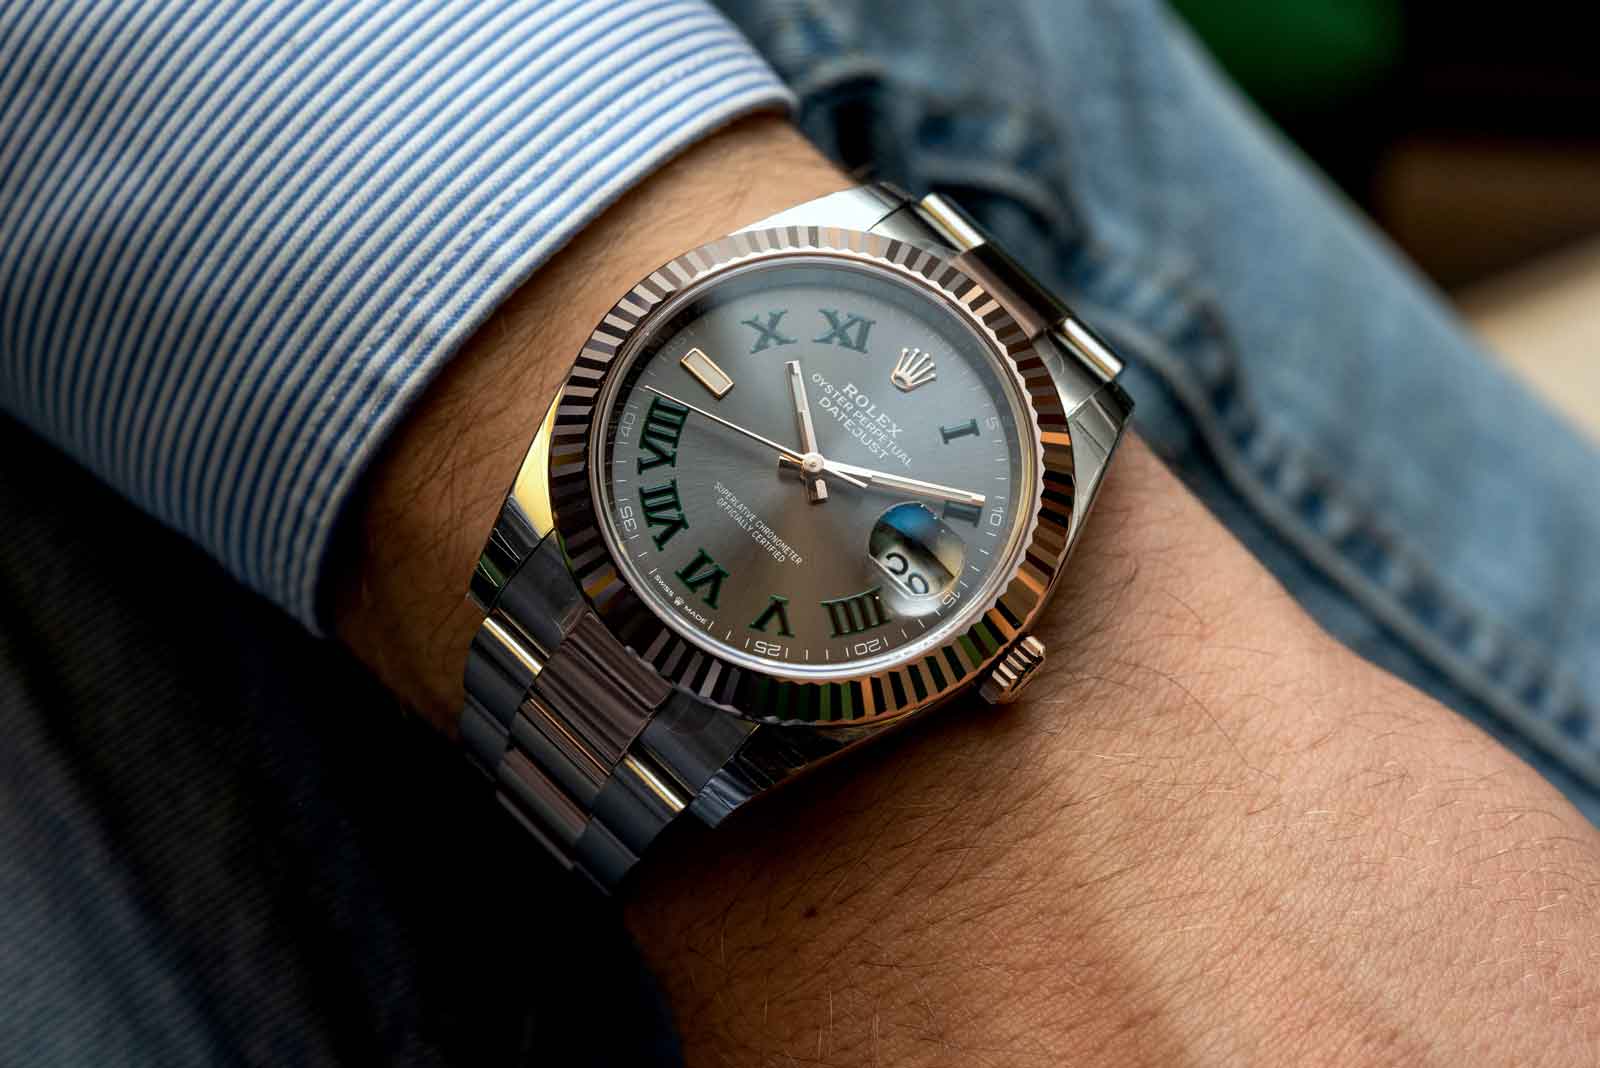 Thu mua đồng hồ Rolex Datejust chính hãng tại muadonghocu.vn